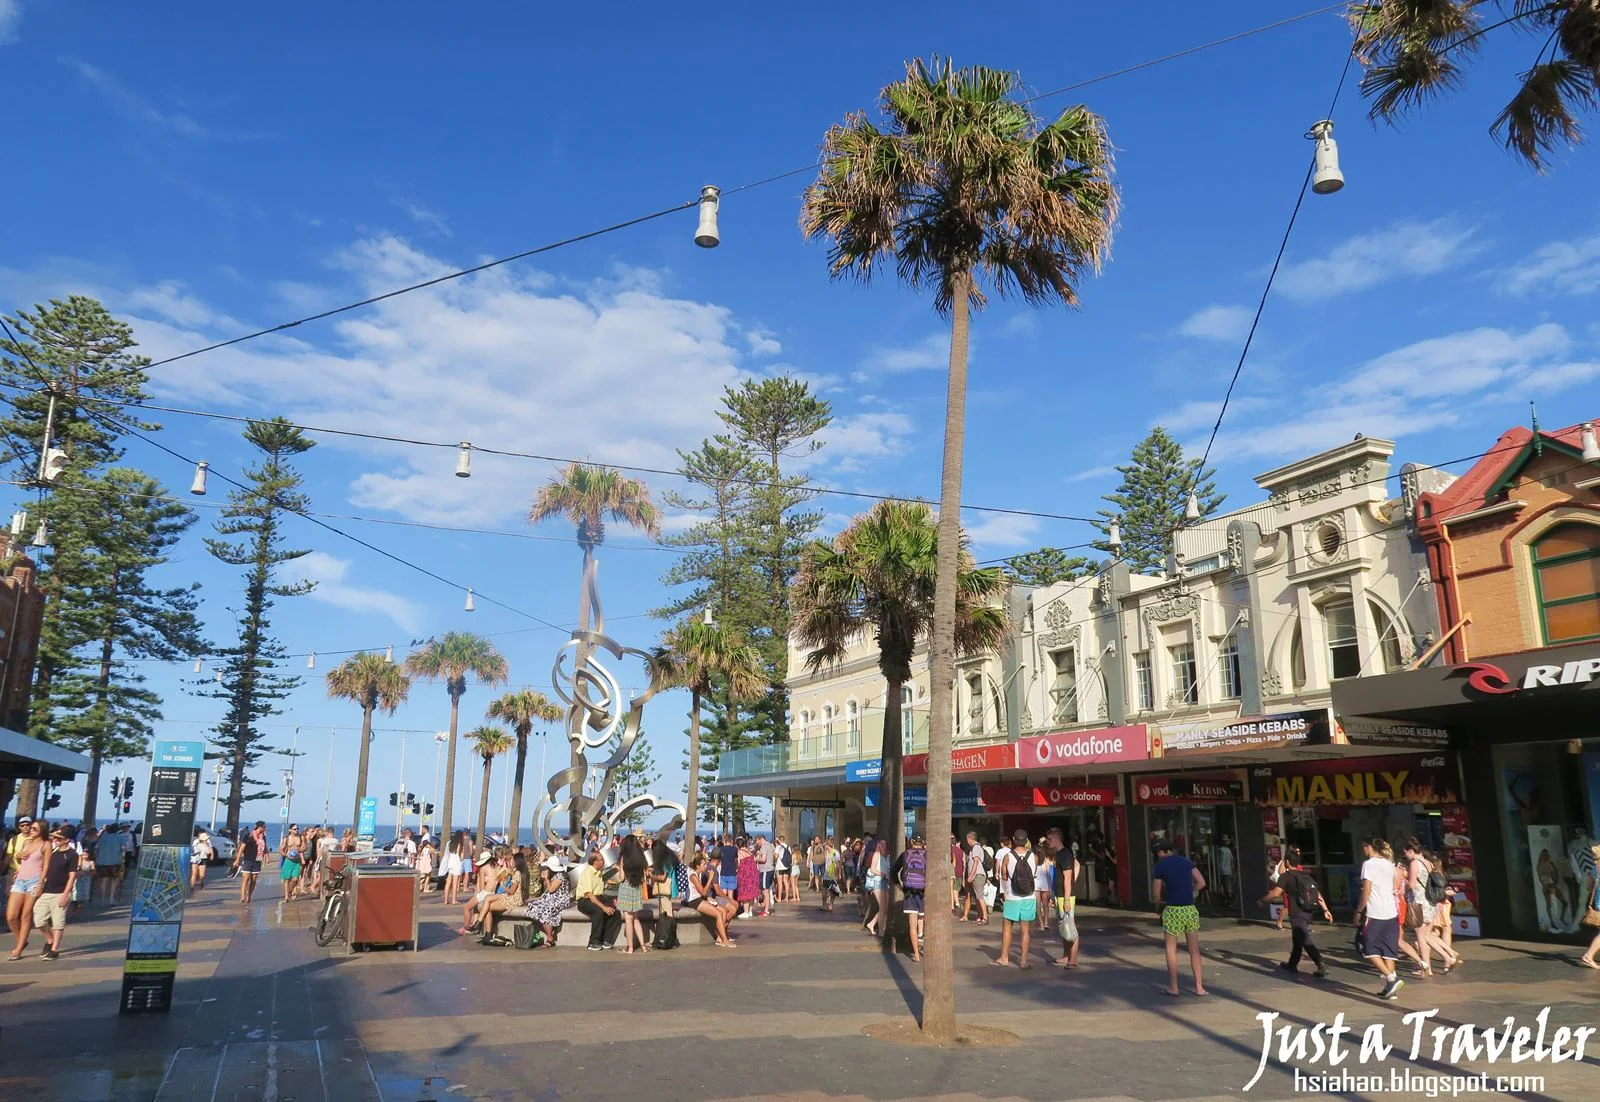 雪梨-悉尼-景點-推薦-曼利-海灘-交通-自由行-行程-旅遊-澳洲-Sydney-Manly-Beach-Tourist-Attraction-Travel-Australia